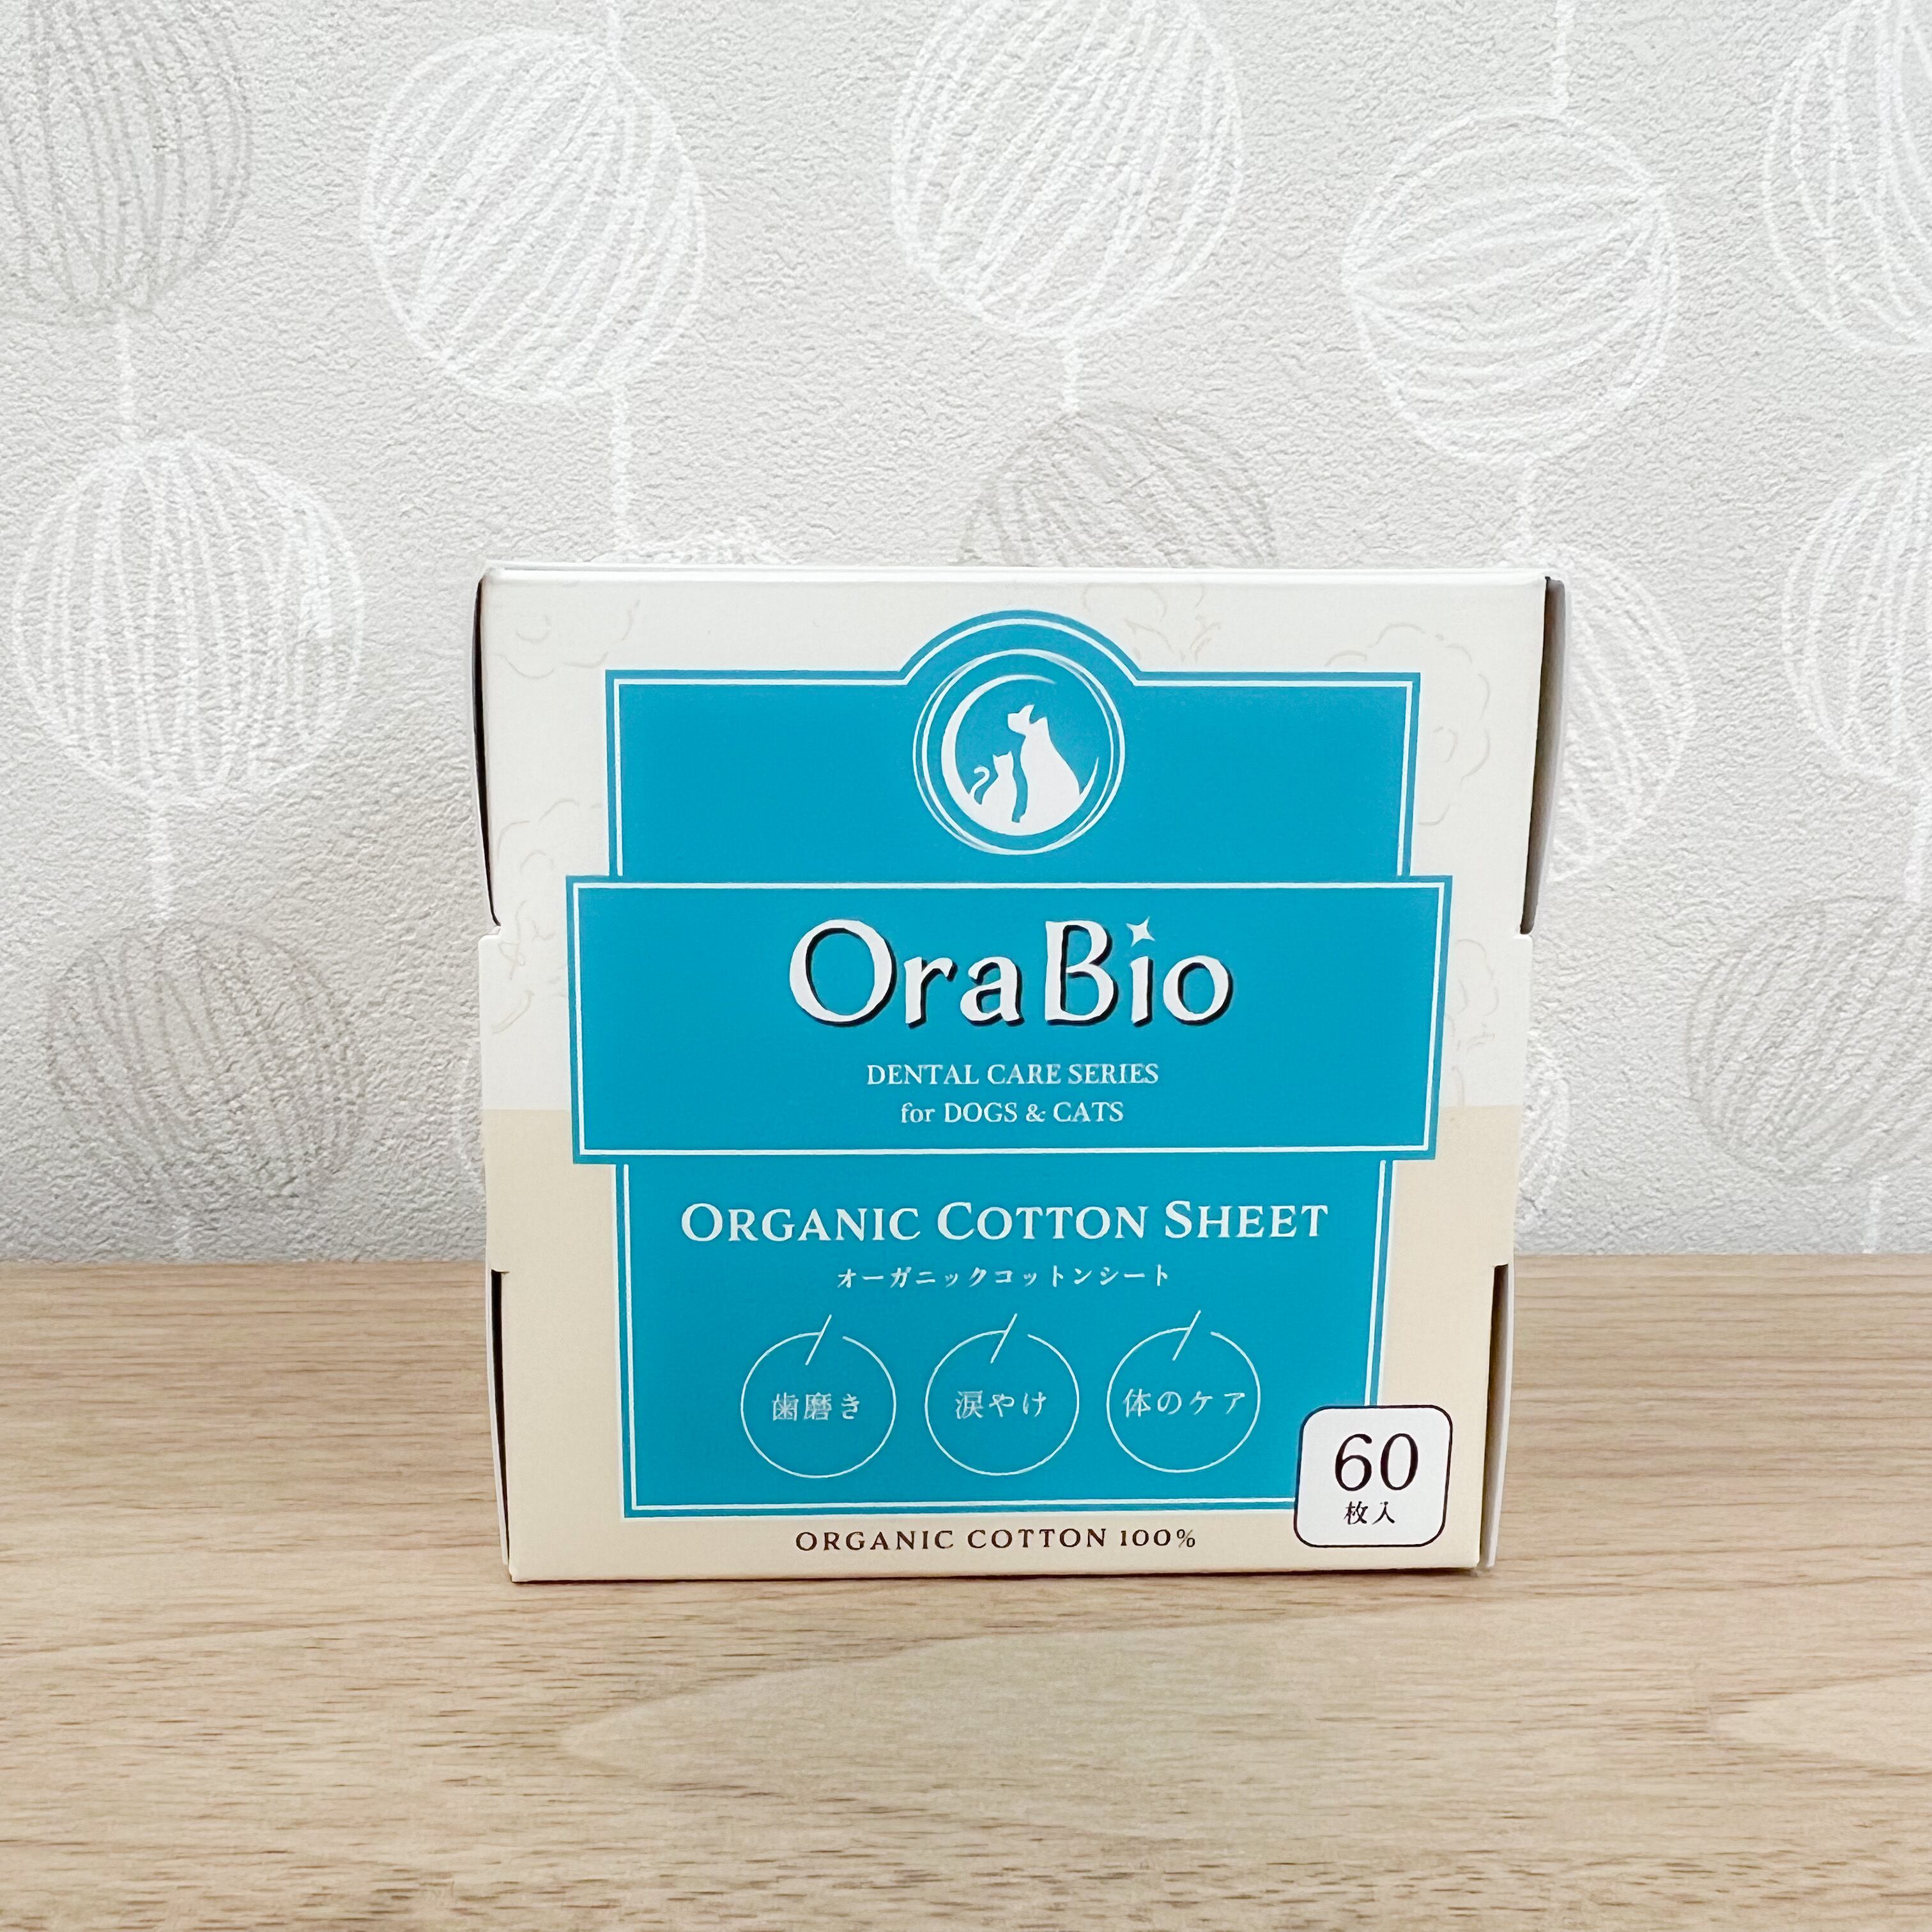 OraBio　オーガニックコットンシート【60枚入】歯磨き・涙ヤケ・体のケアに